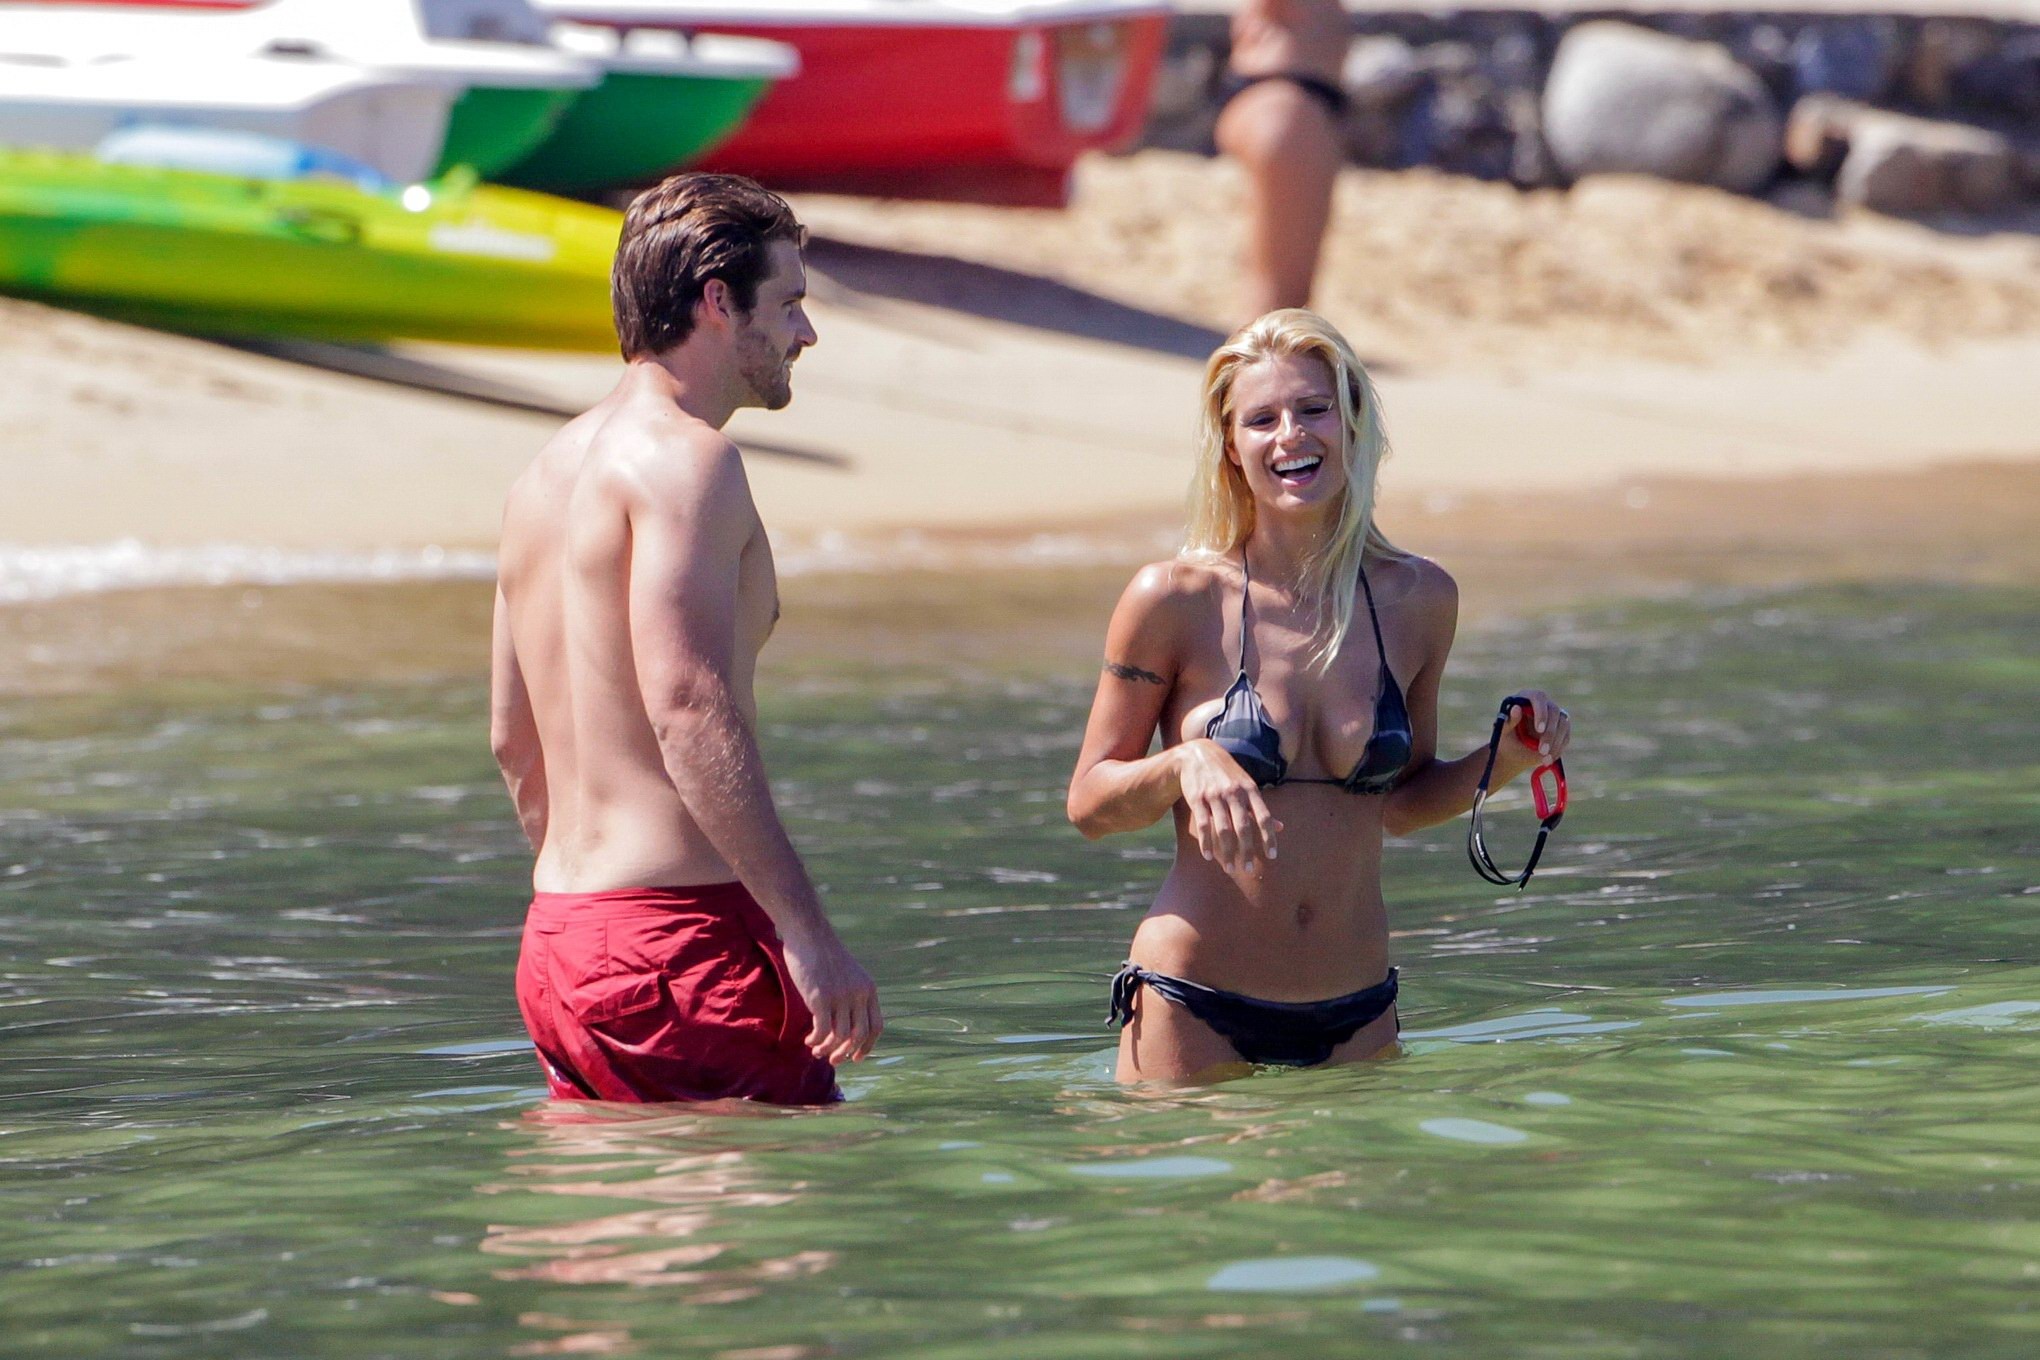 Michelle hunziker en bikini de camuflaje nocturno besándose con su novio en una playa 
 #75254214